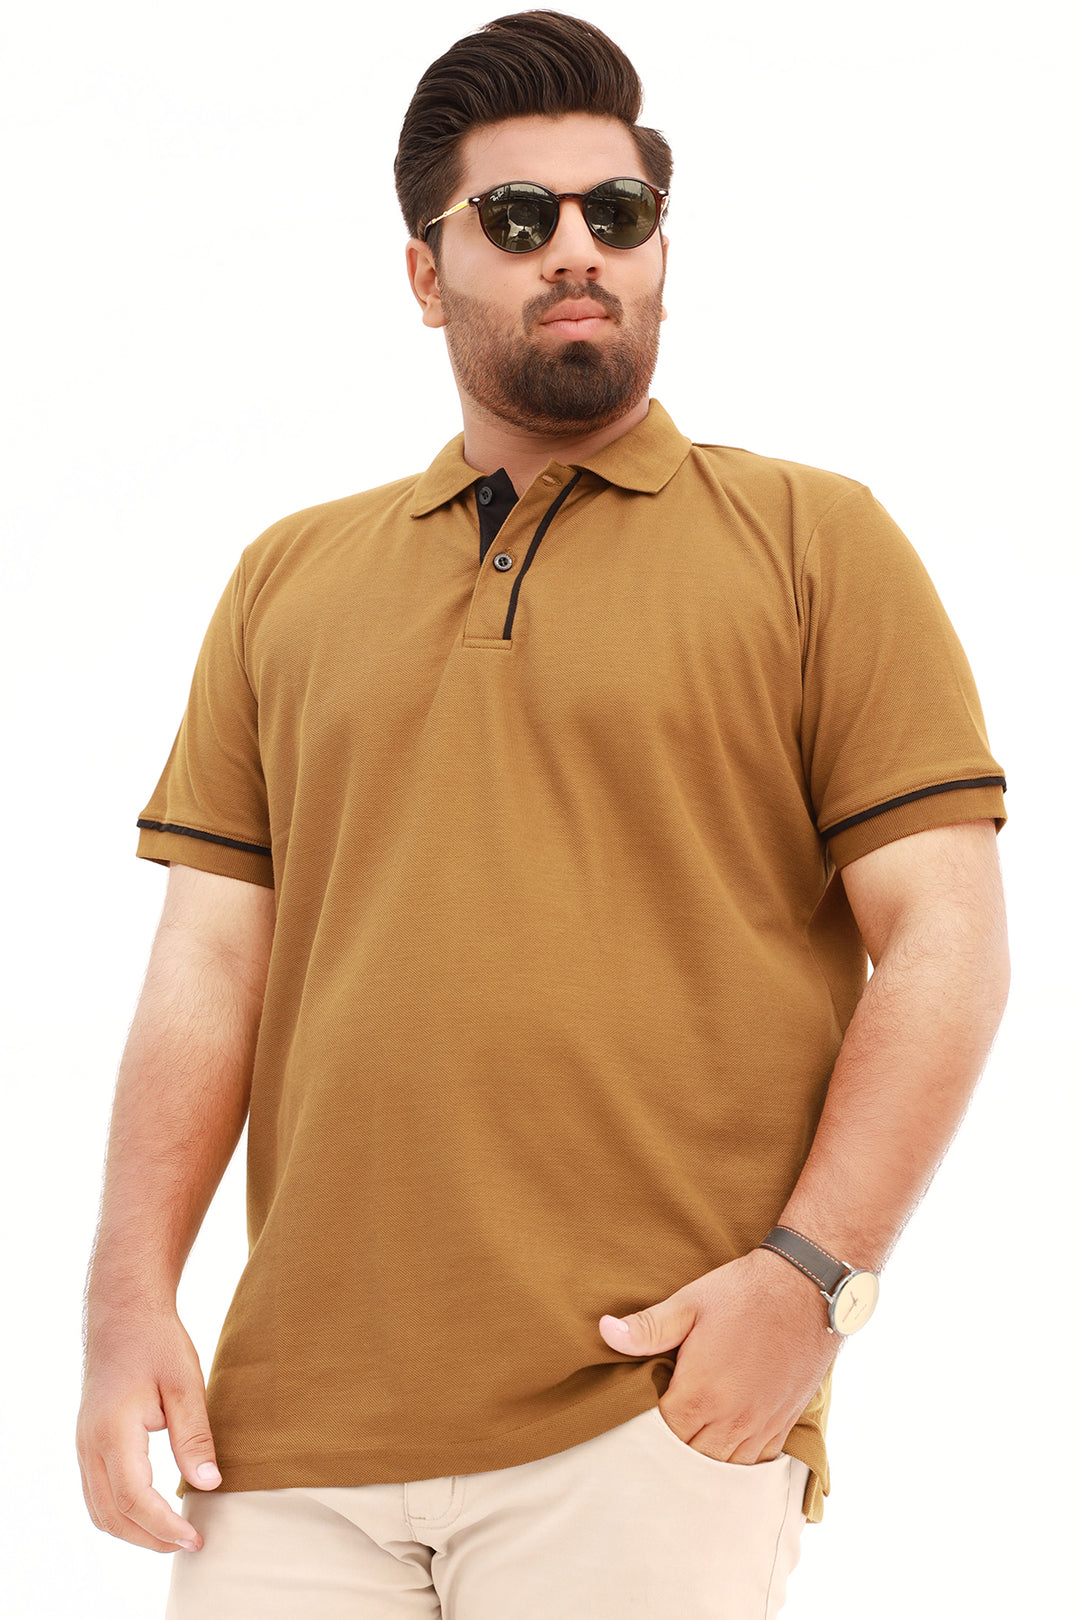 Dijon Brown Polo Shirt (Plus Size) - S22 - MP0089P